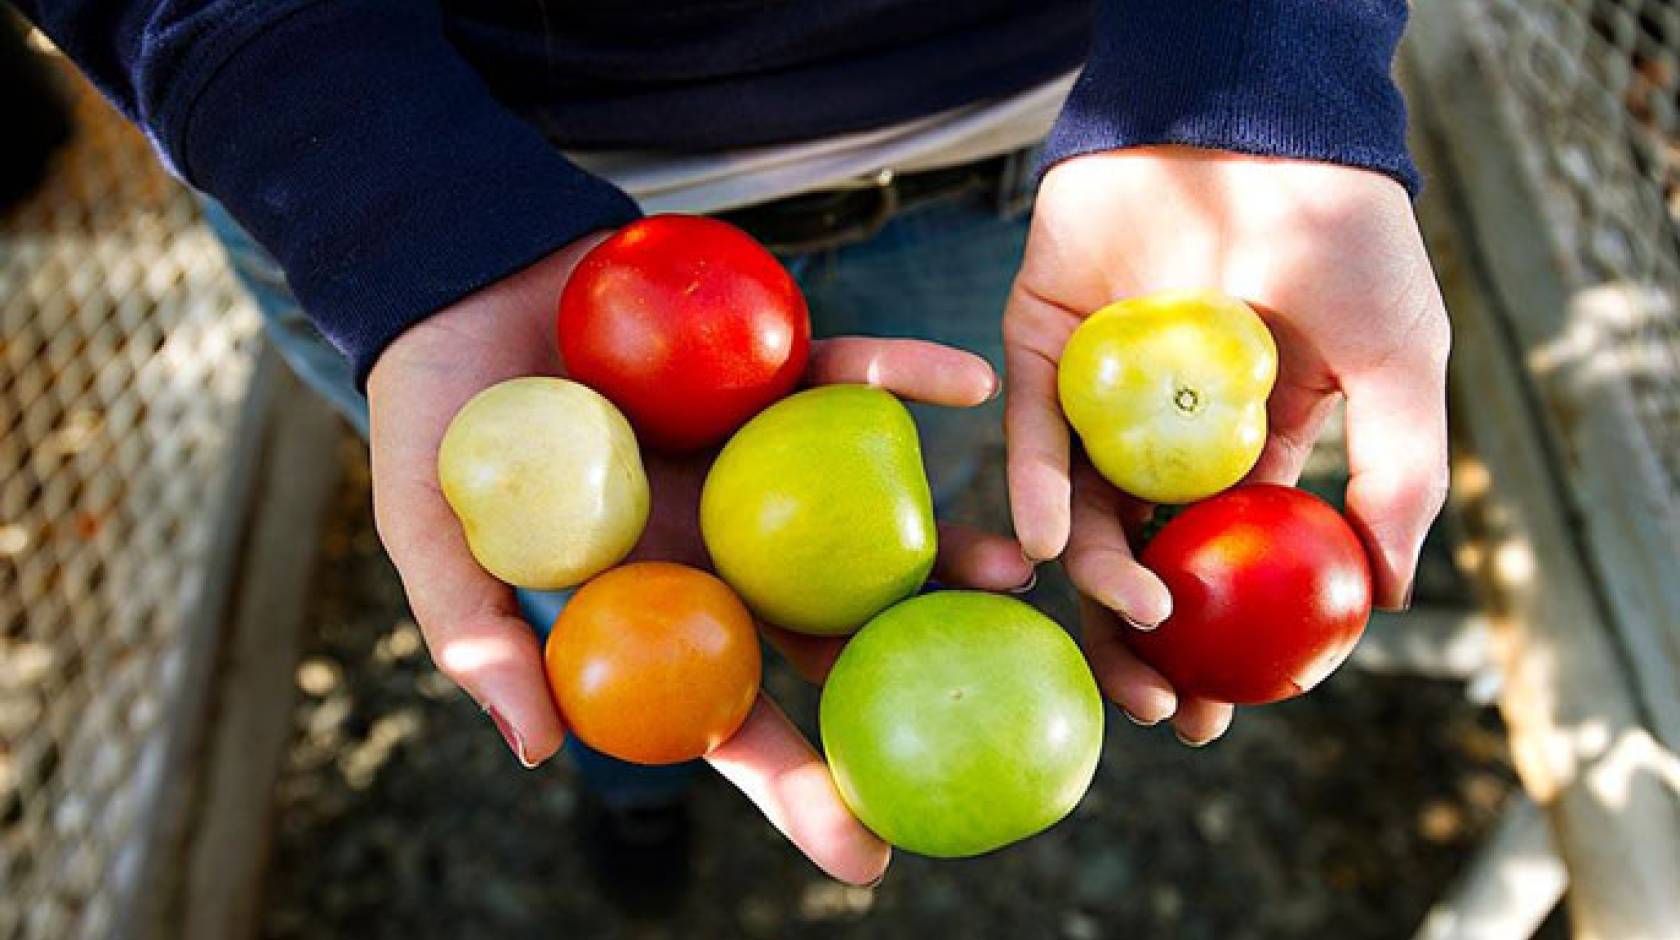 Tomato varieties UC Davis